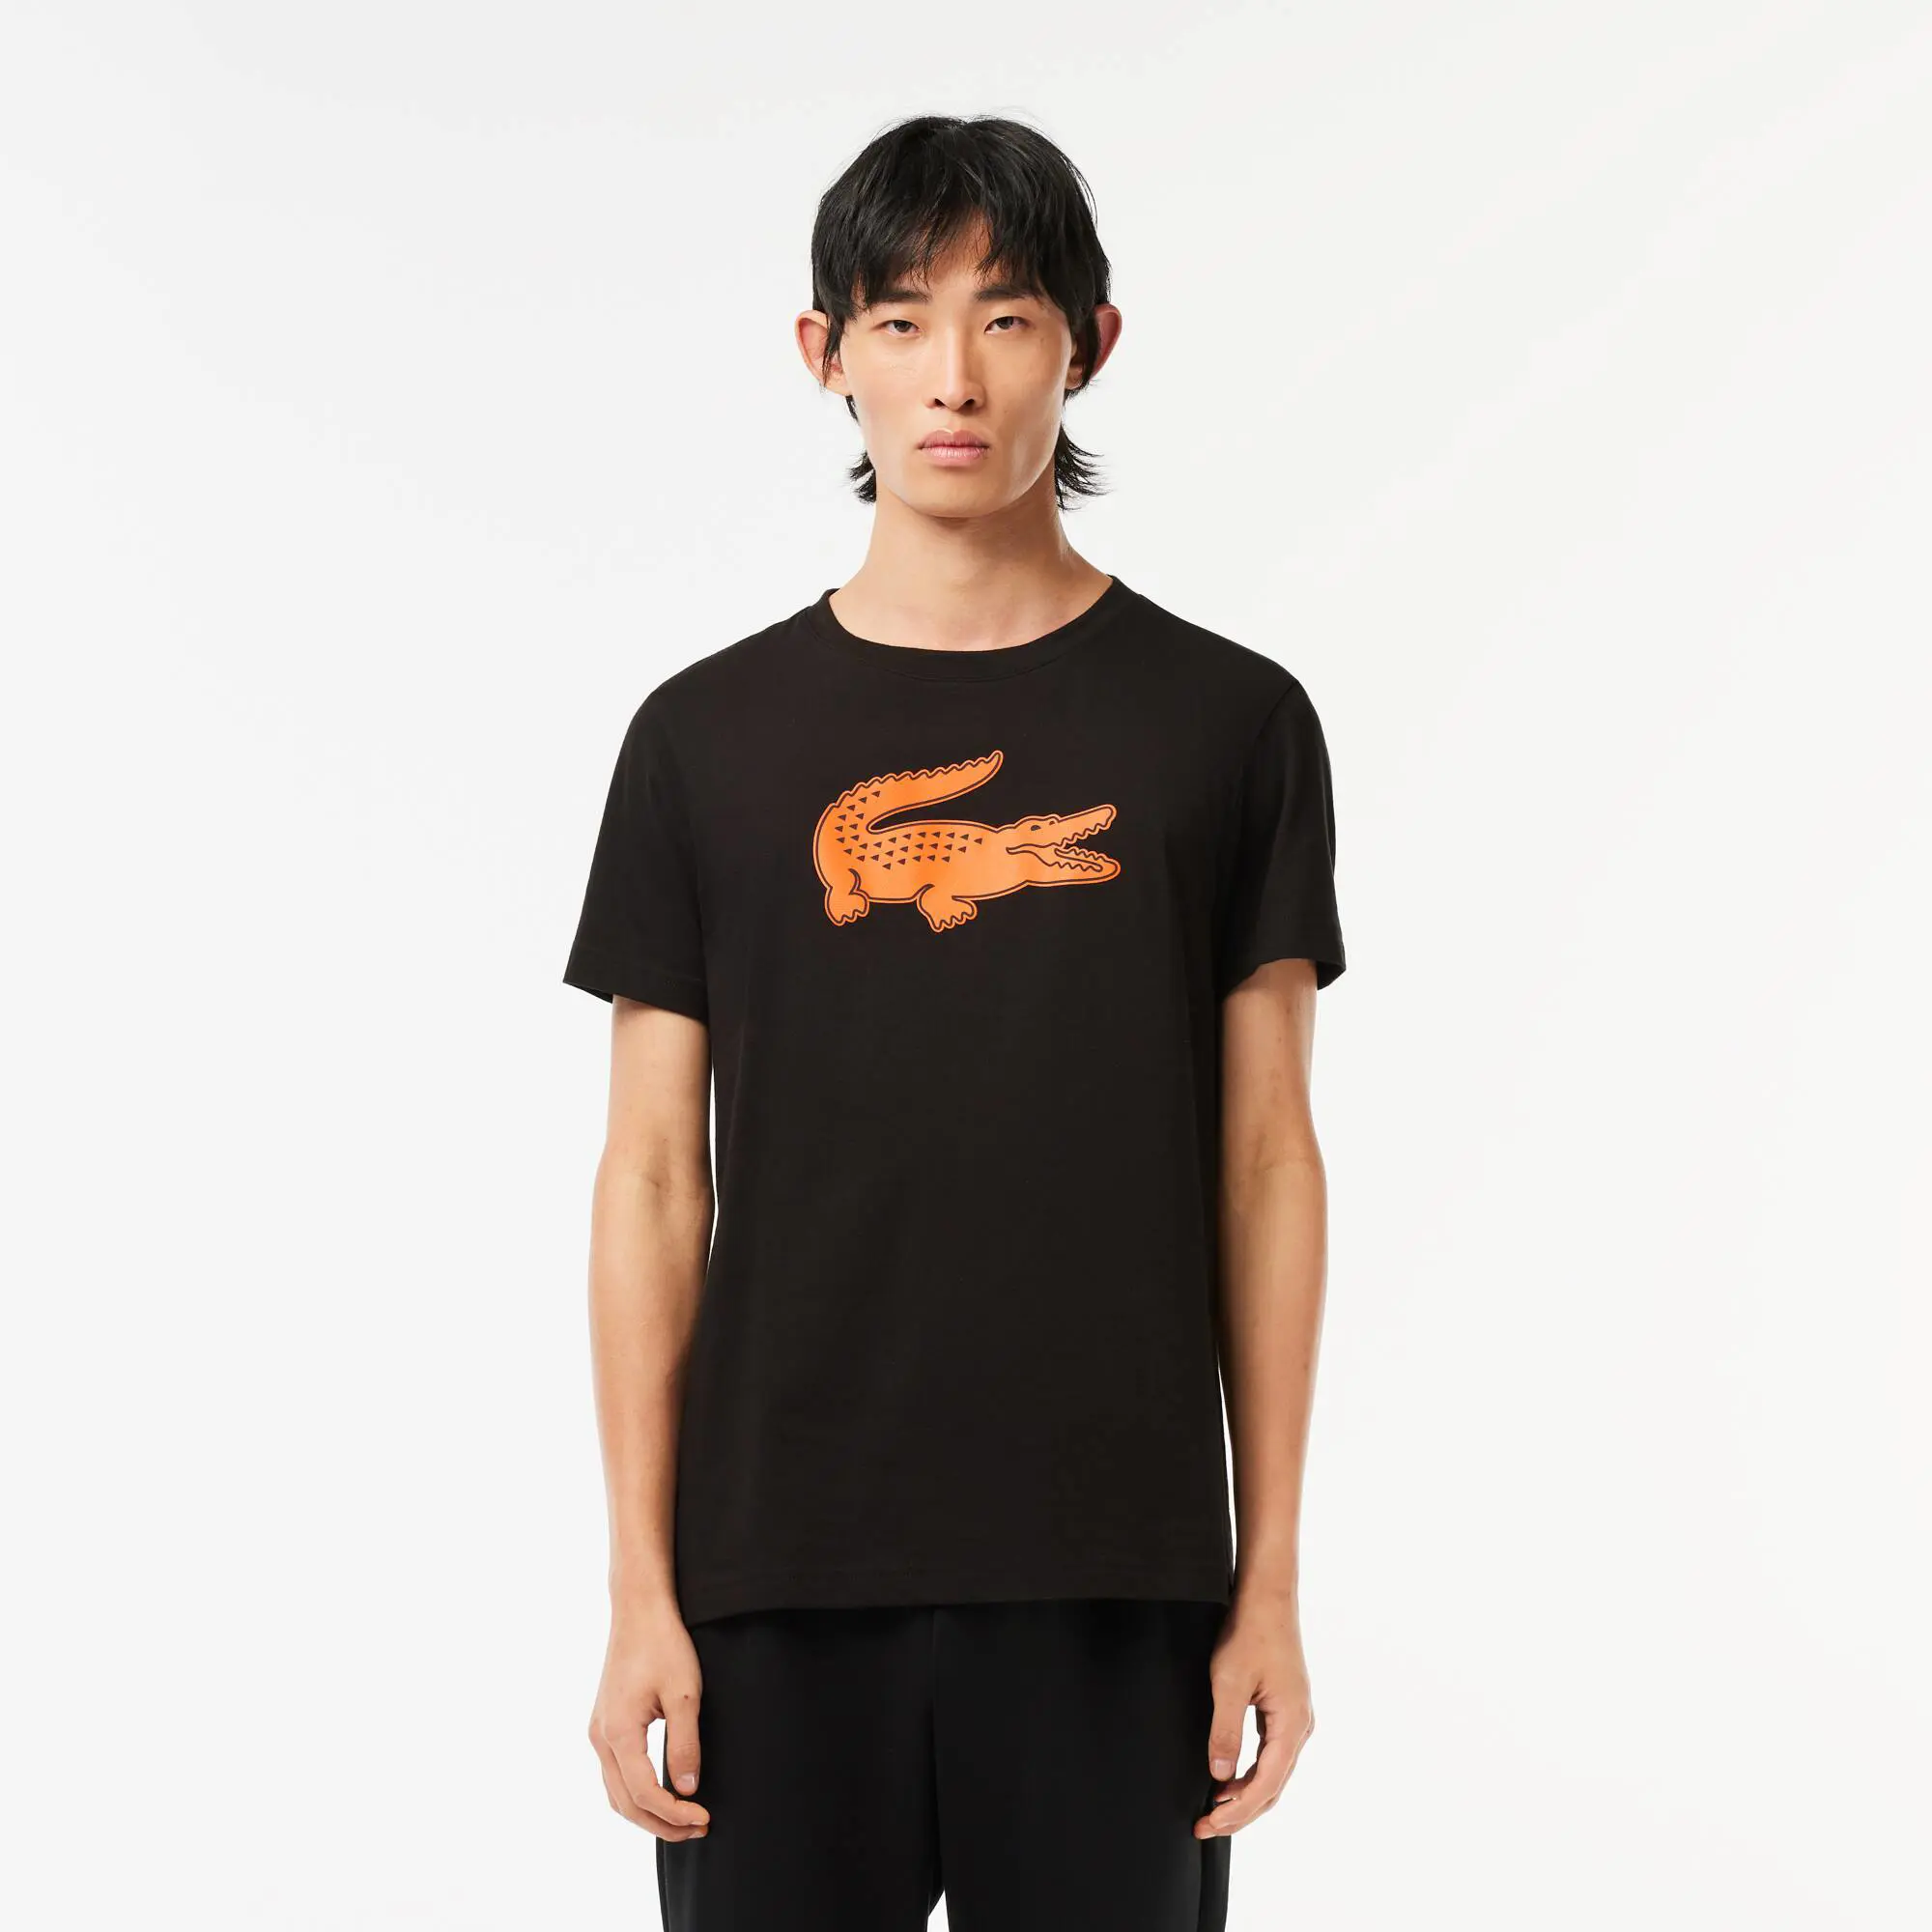 Lacoste T-shirt Lacoste SPORT en jersey respirant imprimé crocodile 3D. 1